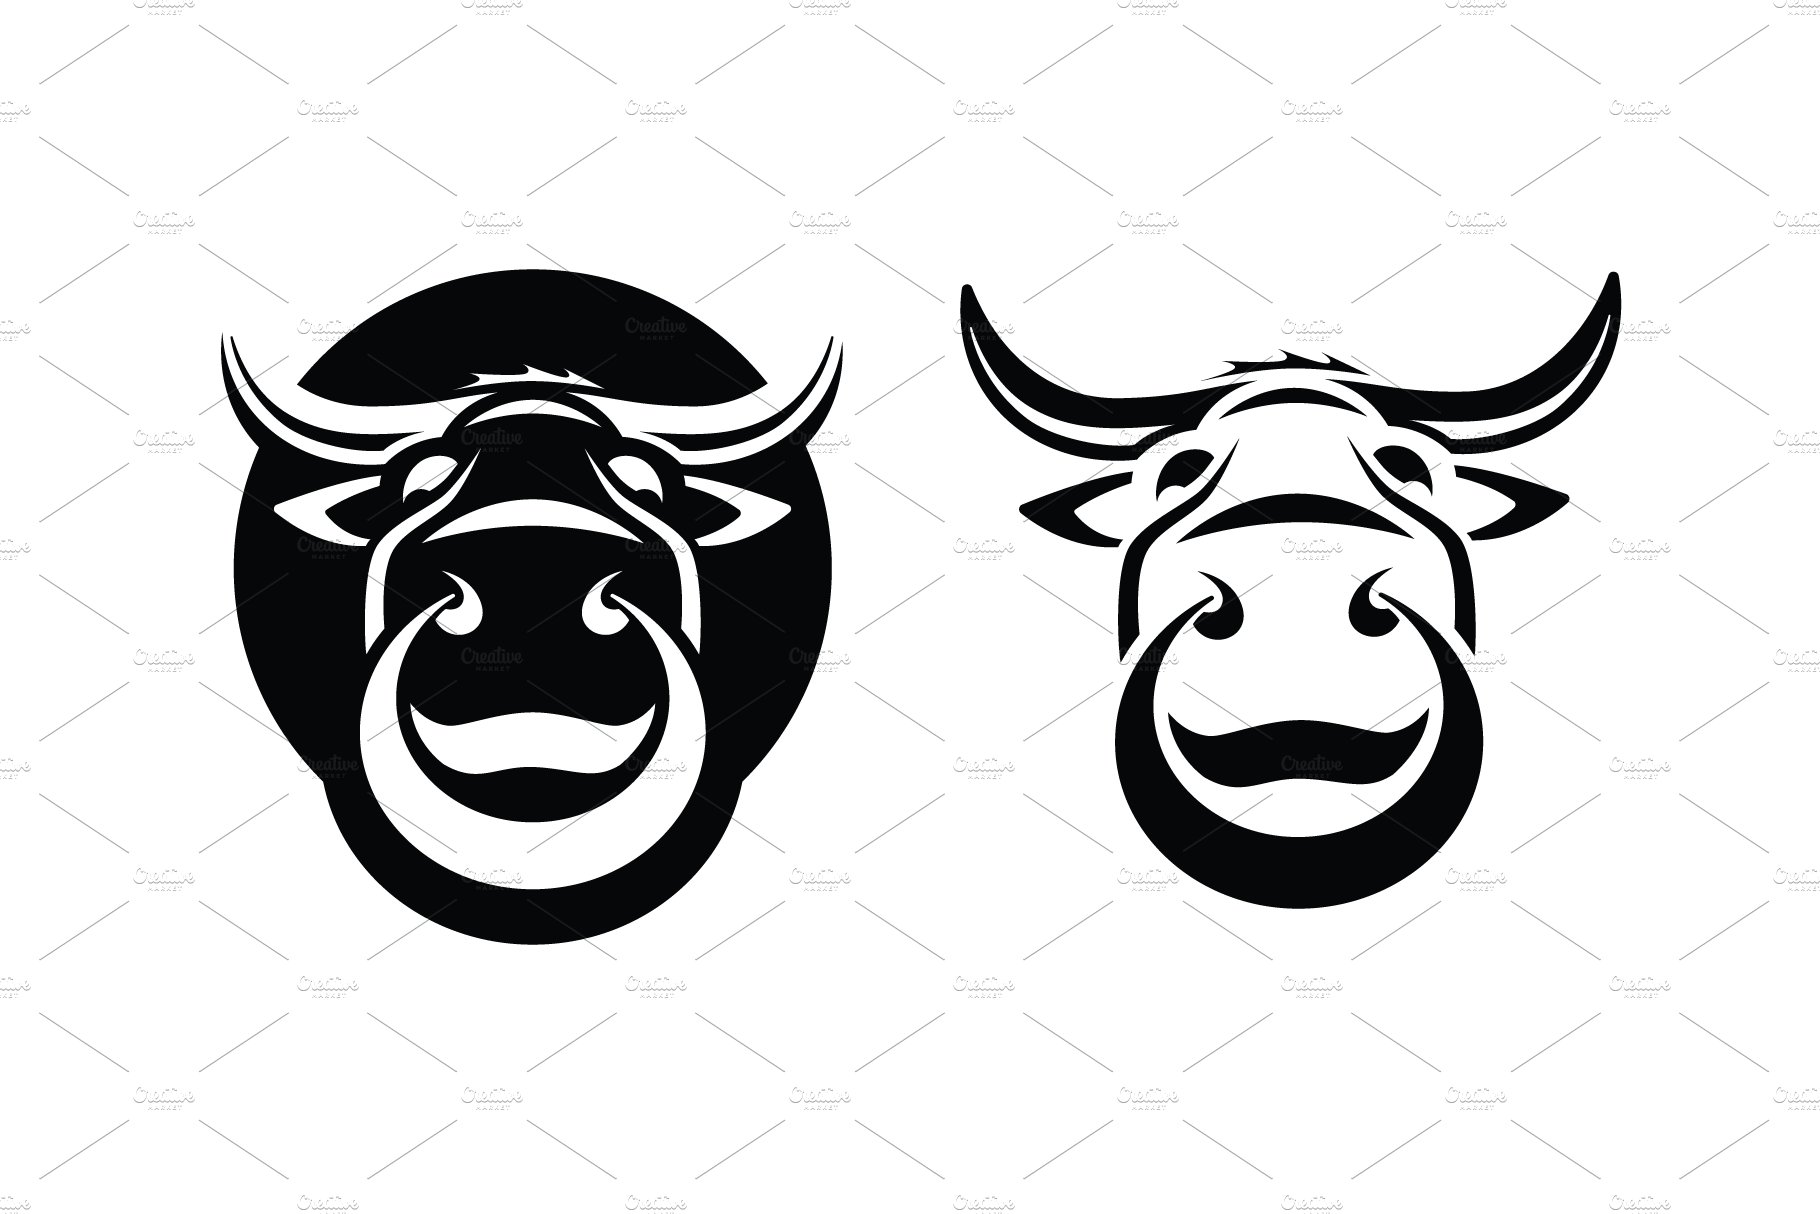 bull face logo